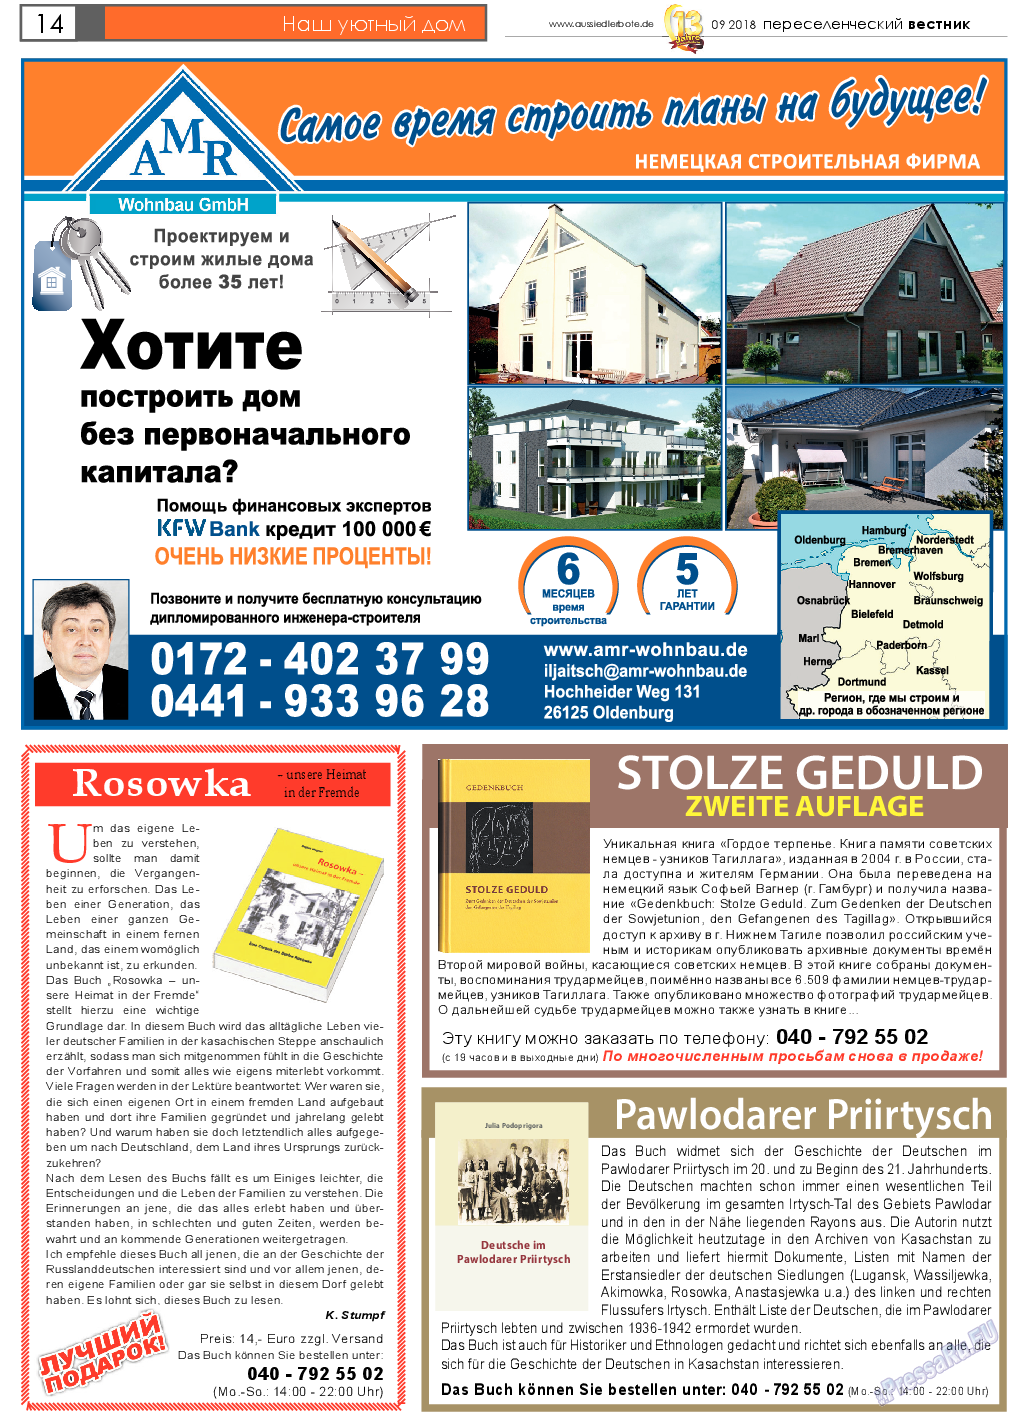 Переселенческий вестник, газета. 2018 №9 стр.14